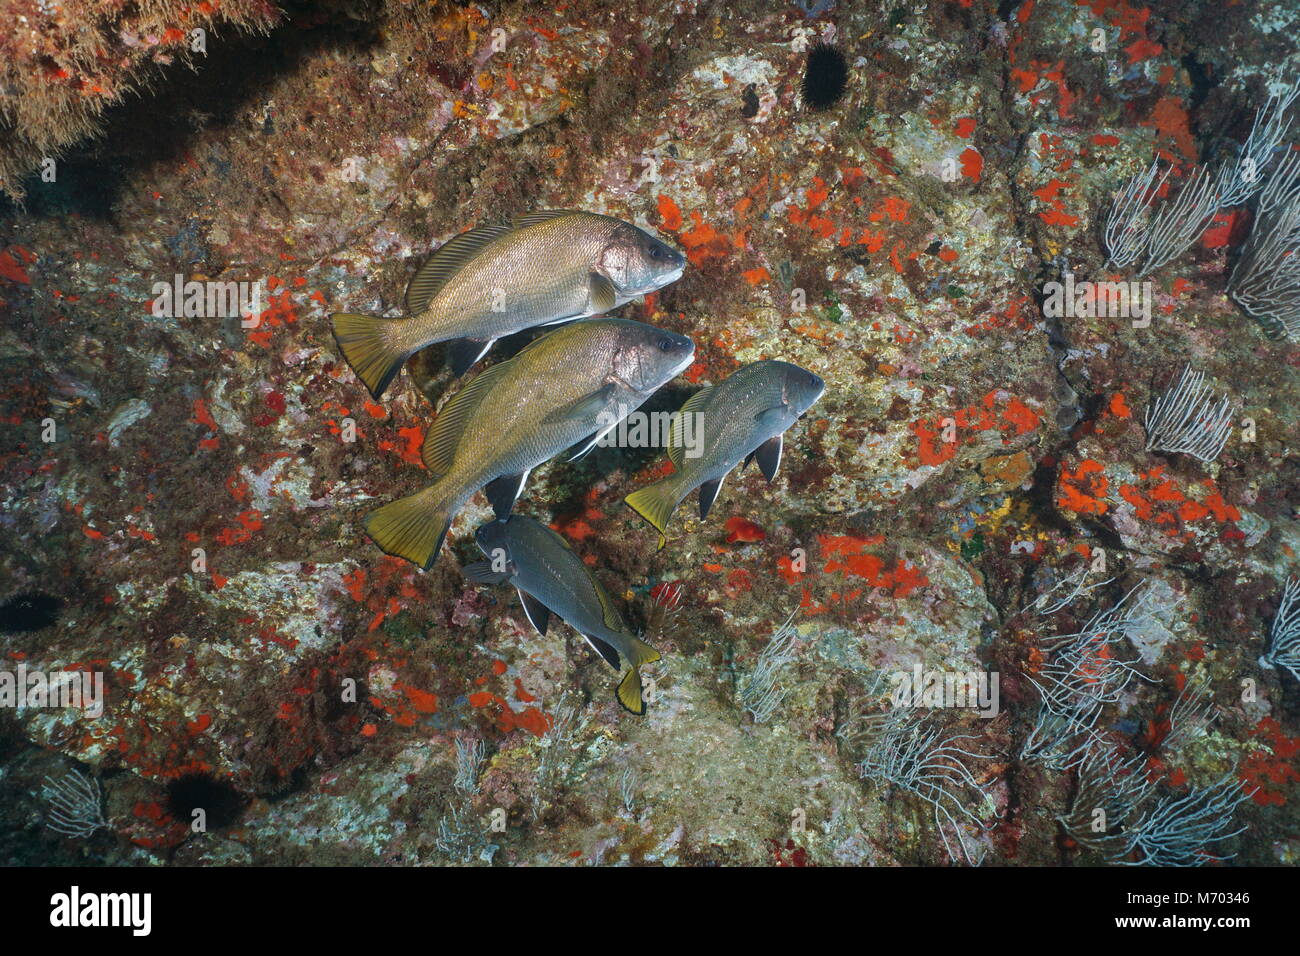 Plusieurs poissons maigres brun, Sciaena umbra, sous l'eau dans la réserve marine de Cerbère Banyuls, mer Méditerranée, Pyrénées-Orientales, France Banque D'Images